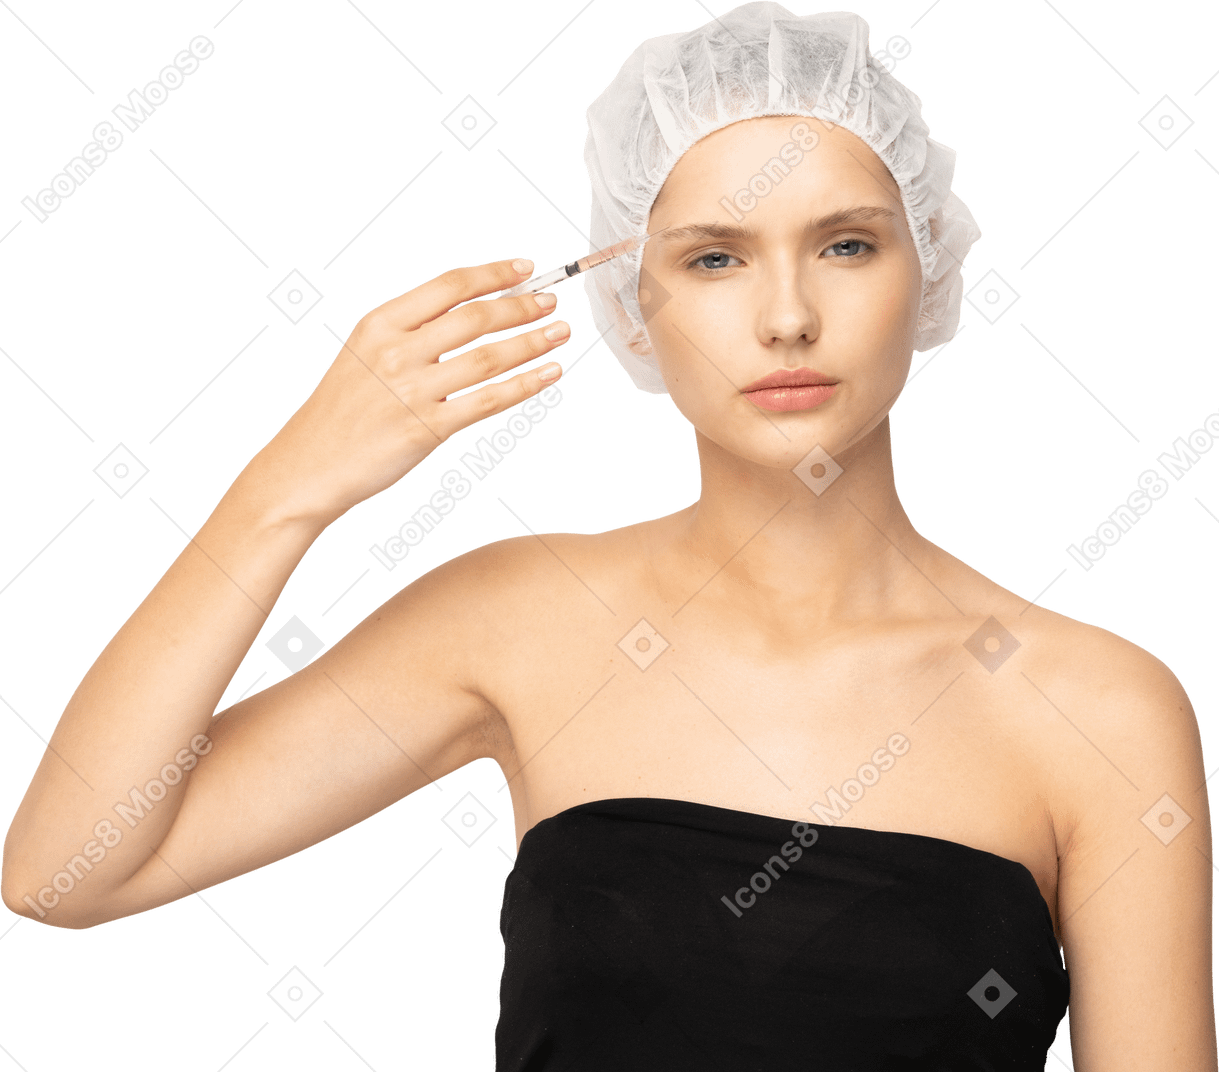 Femme faisant une injection à son visage